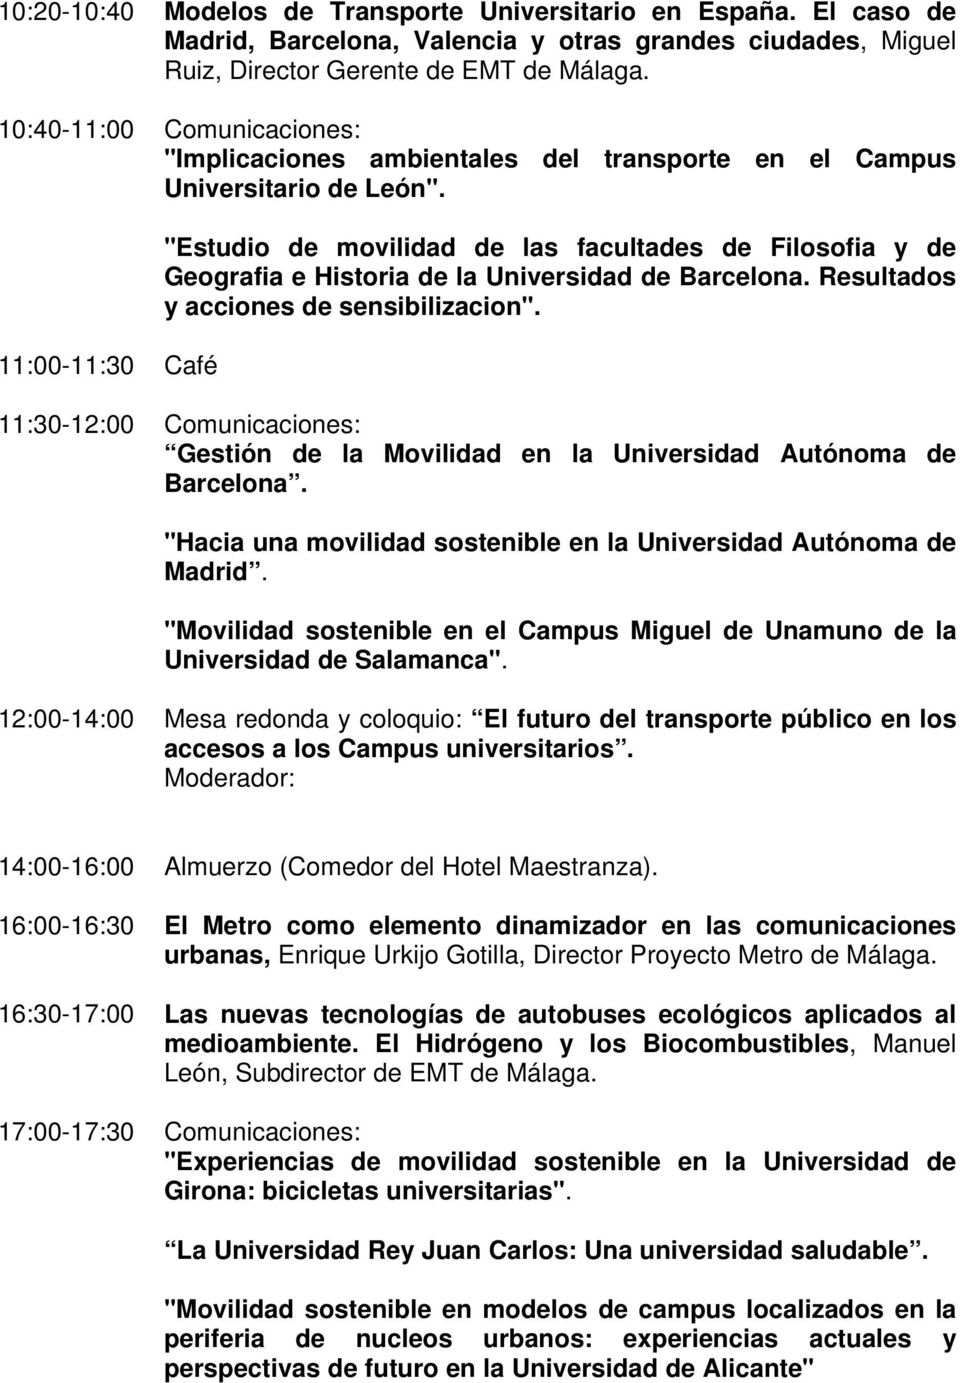 11:00-11:30 Café "Estudio de movilidad de las facultades de Filosofia y de Geografia e Historia de la Universidad de Barcelona. Resultados y acciones de sensibilizacion".